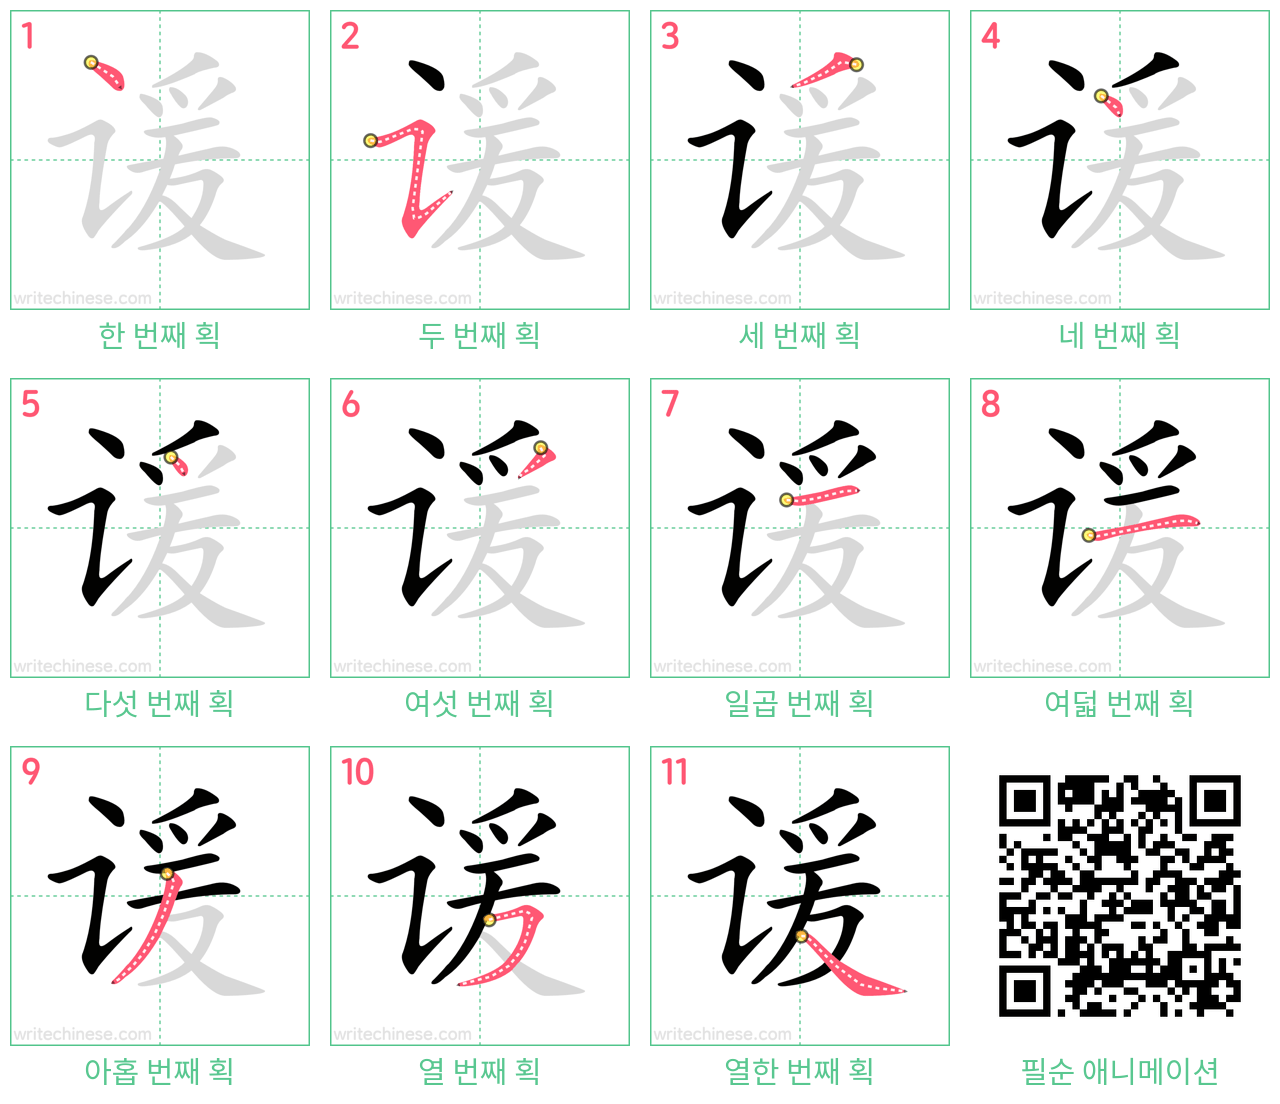 谖 step-by-step stroke order diagrams